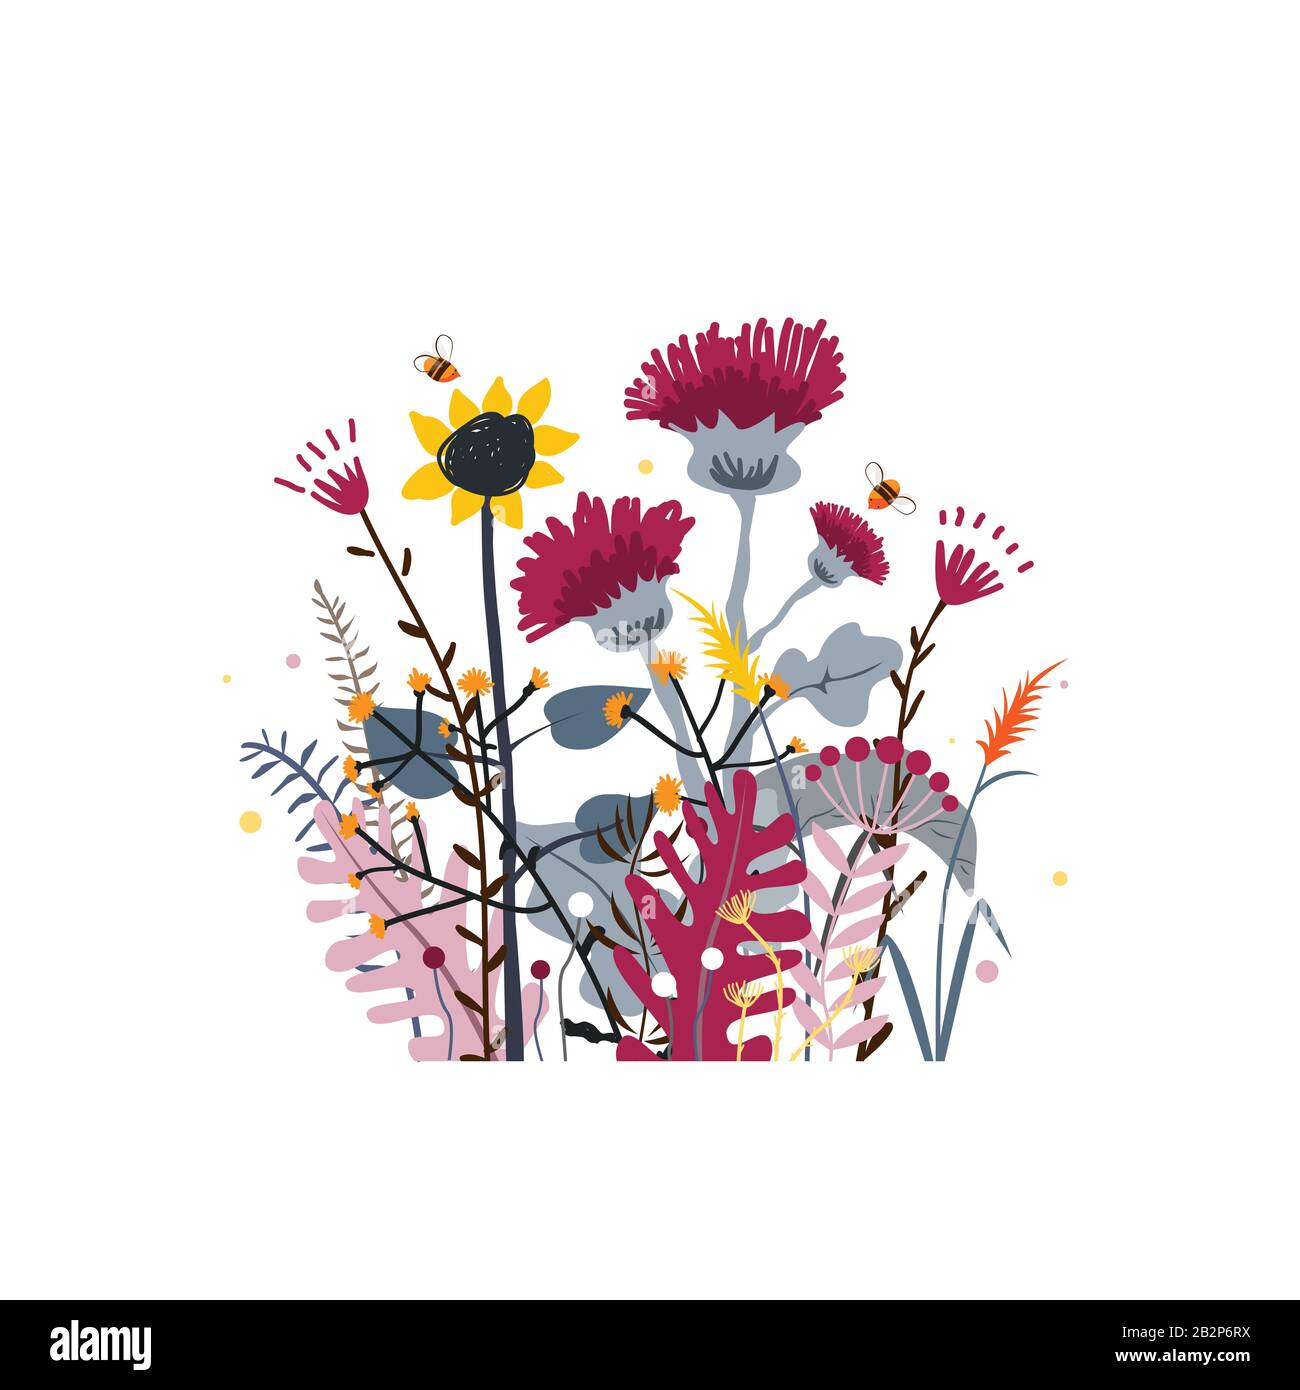 Selvatica e miele prato fiori mazzo. Sfondo vettoriale natura con le erbe selvatiche disegnate a mano, fiori e foglie su bianco. Illustrazione Vettoriale